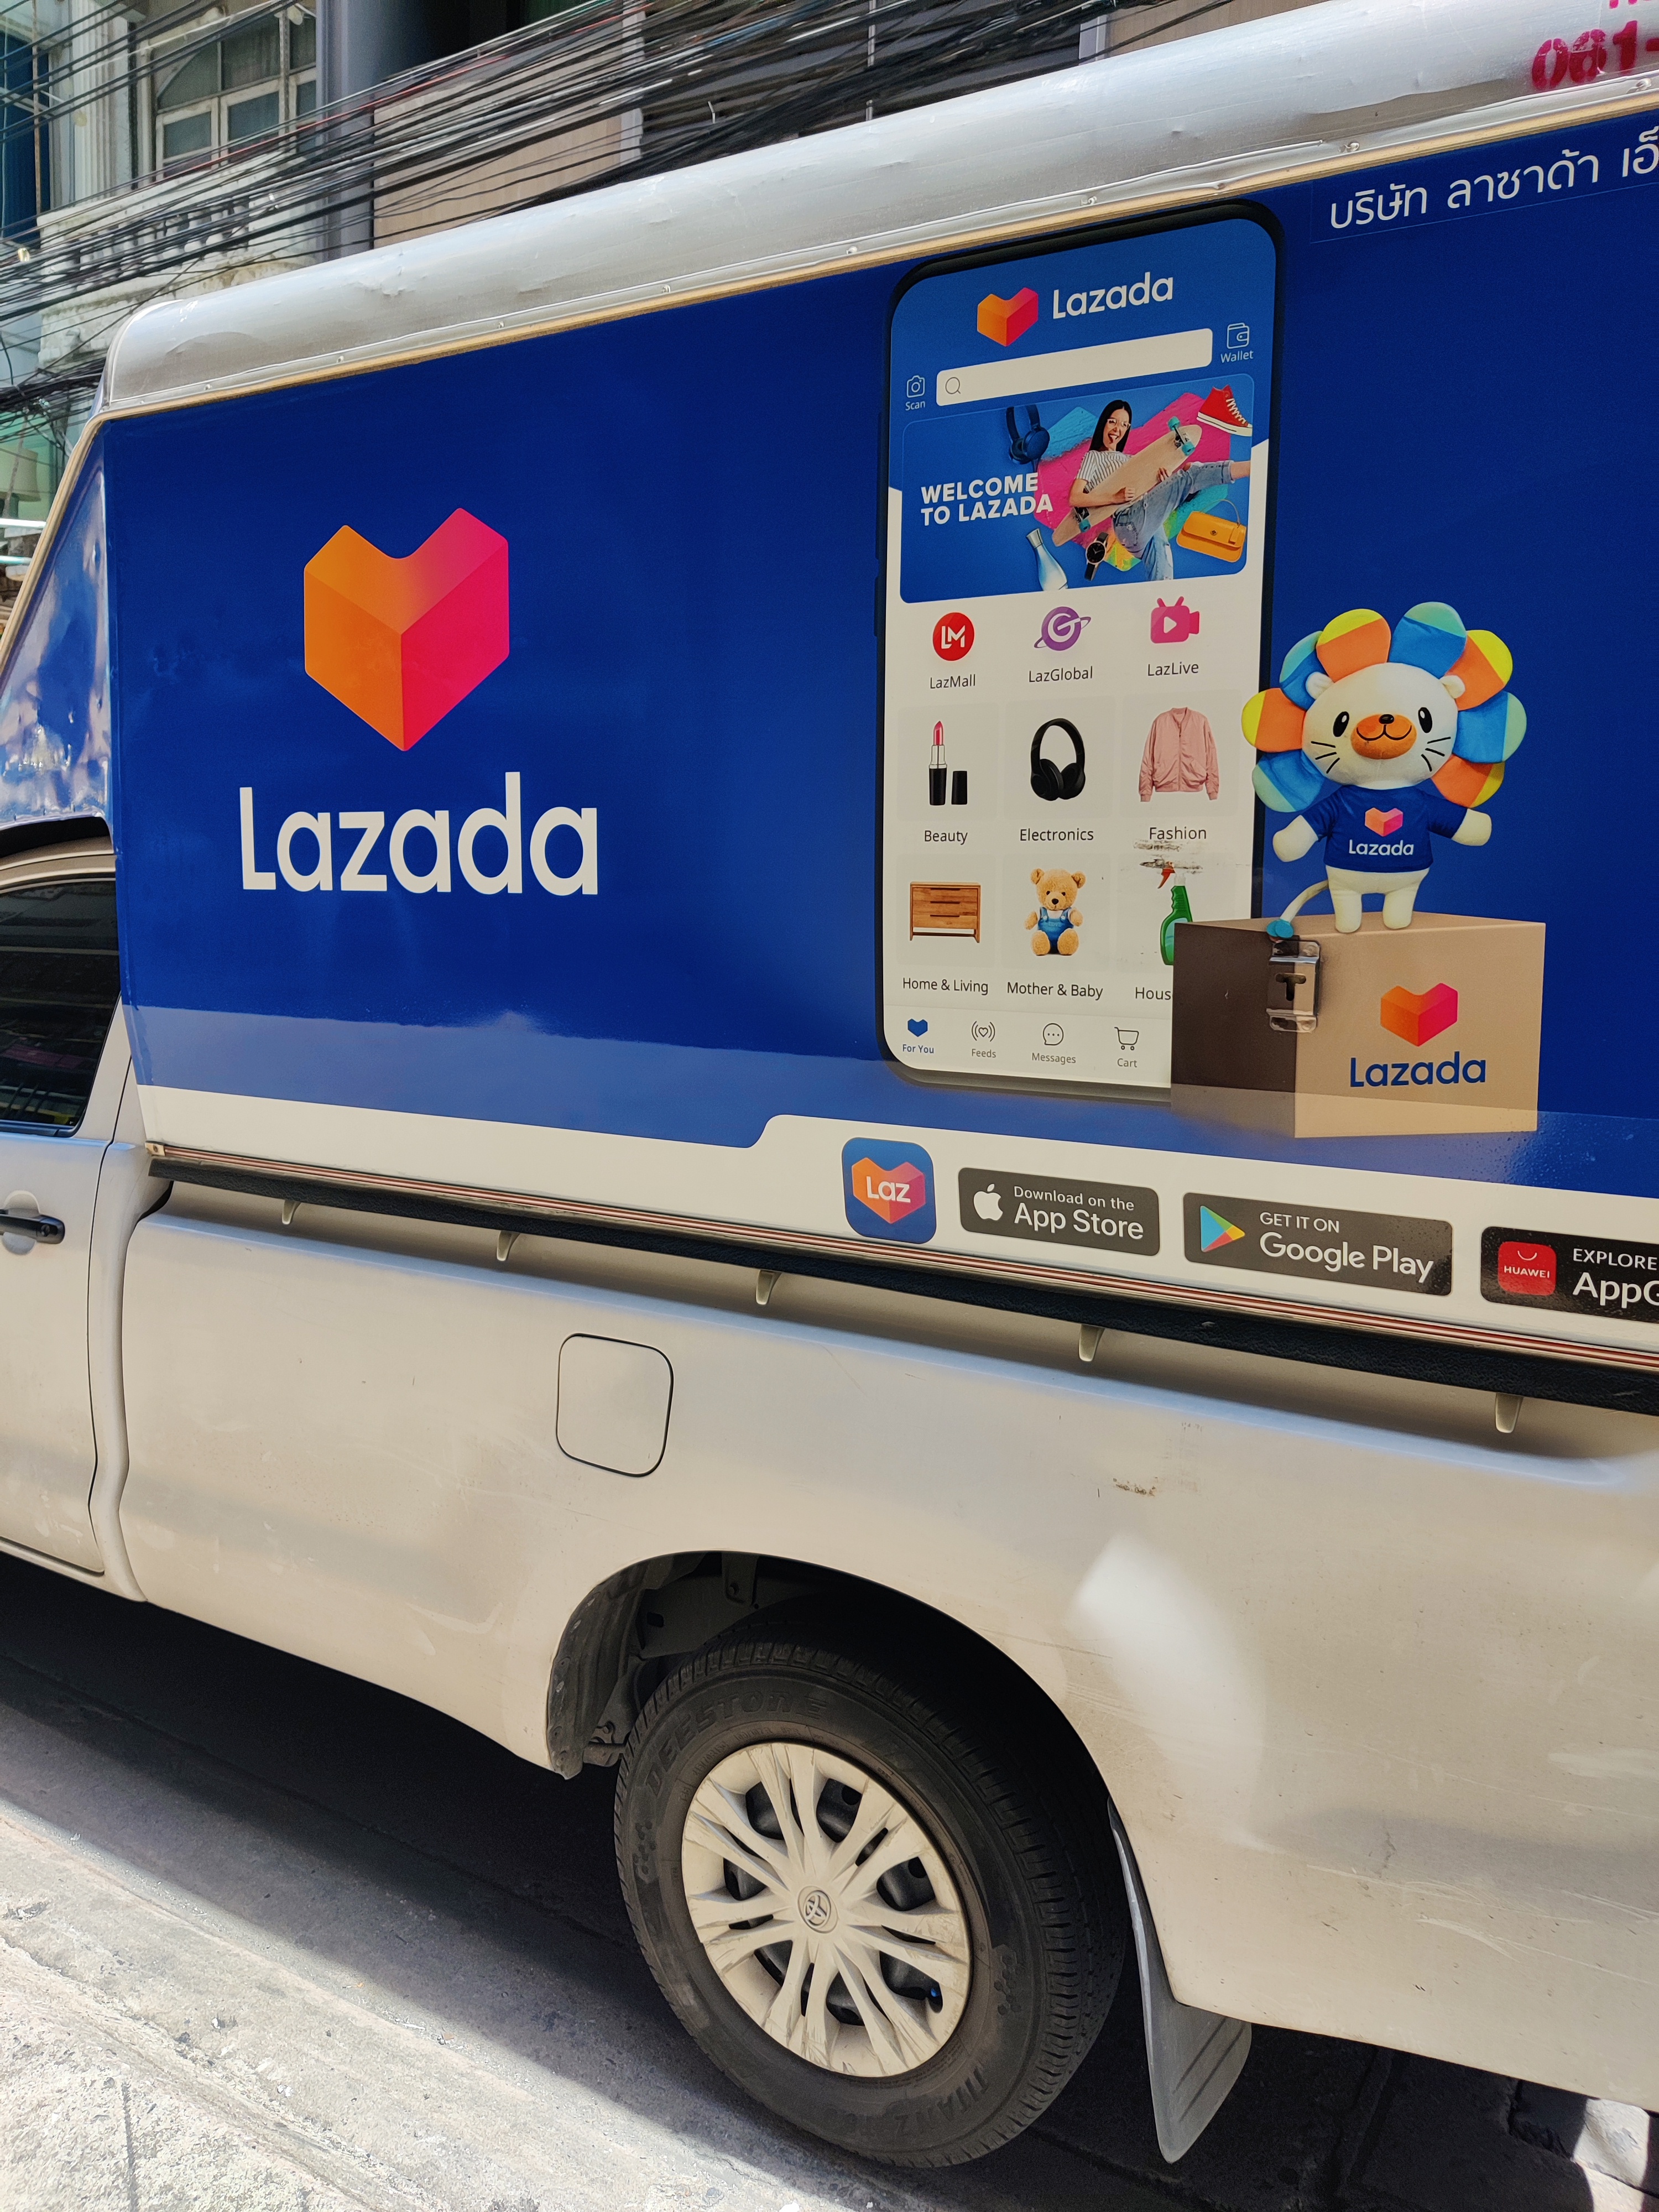 How To make a Website Like Lazada?